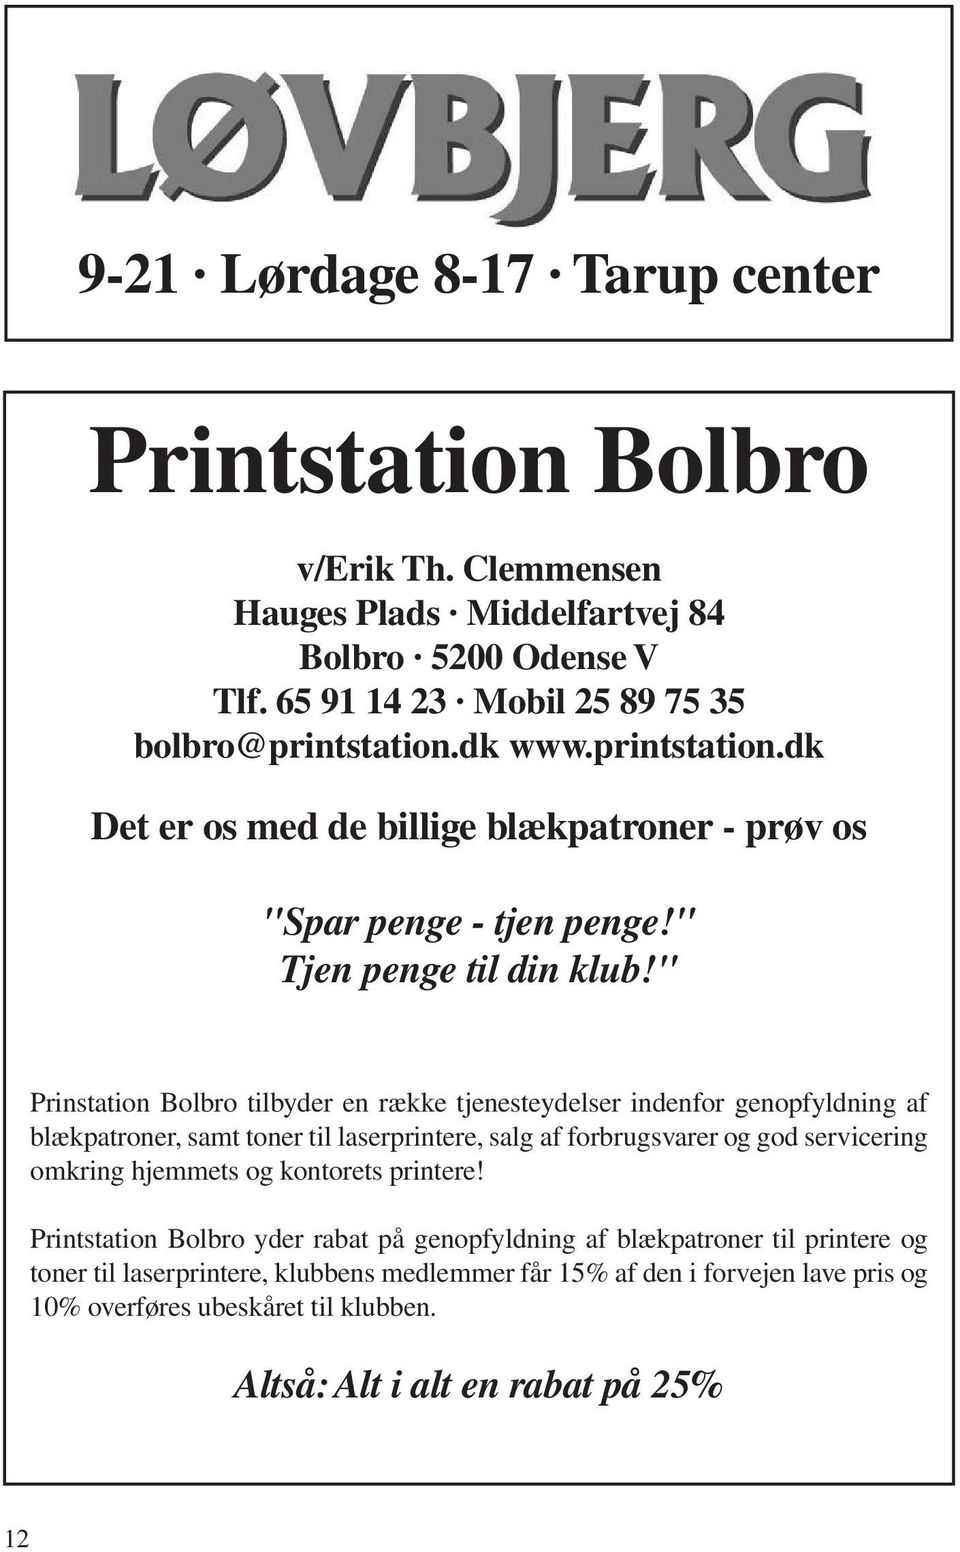 " Prinstation Bolbro tilbyder en række tjenesteydelser indenfor genopfyldning af blækpatroner, samt toner til laserprintere, salg af forbrugsvarer og god servicering omkring hjemmets og